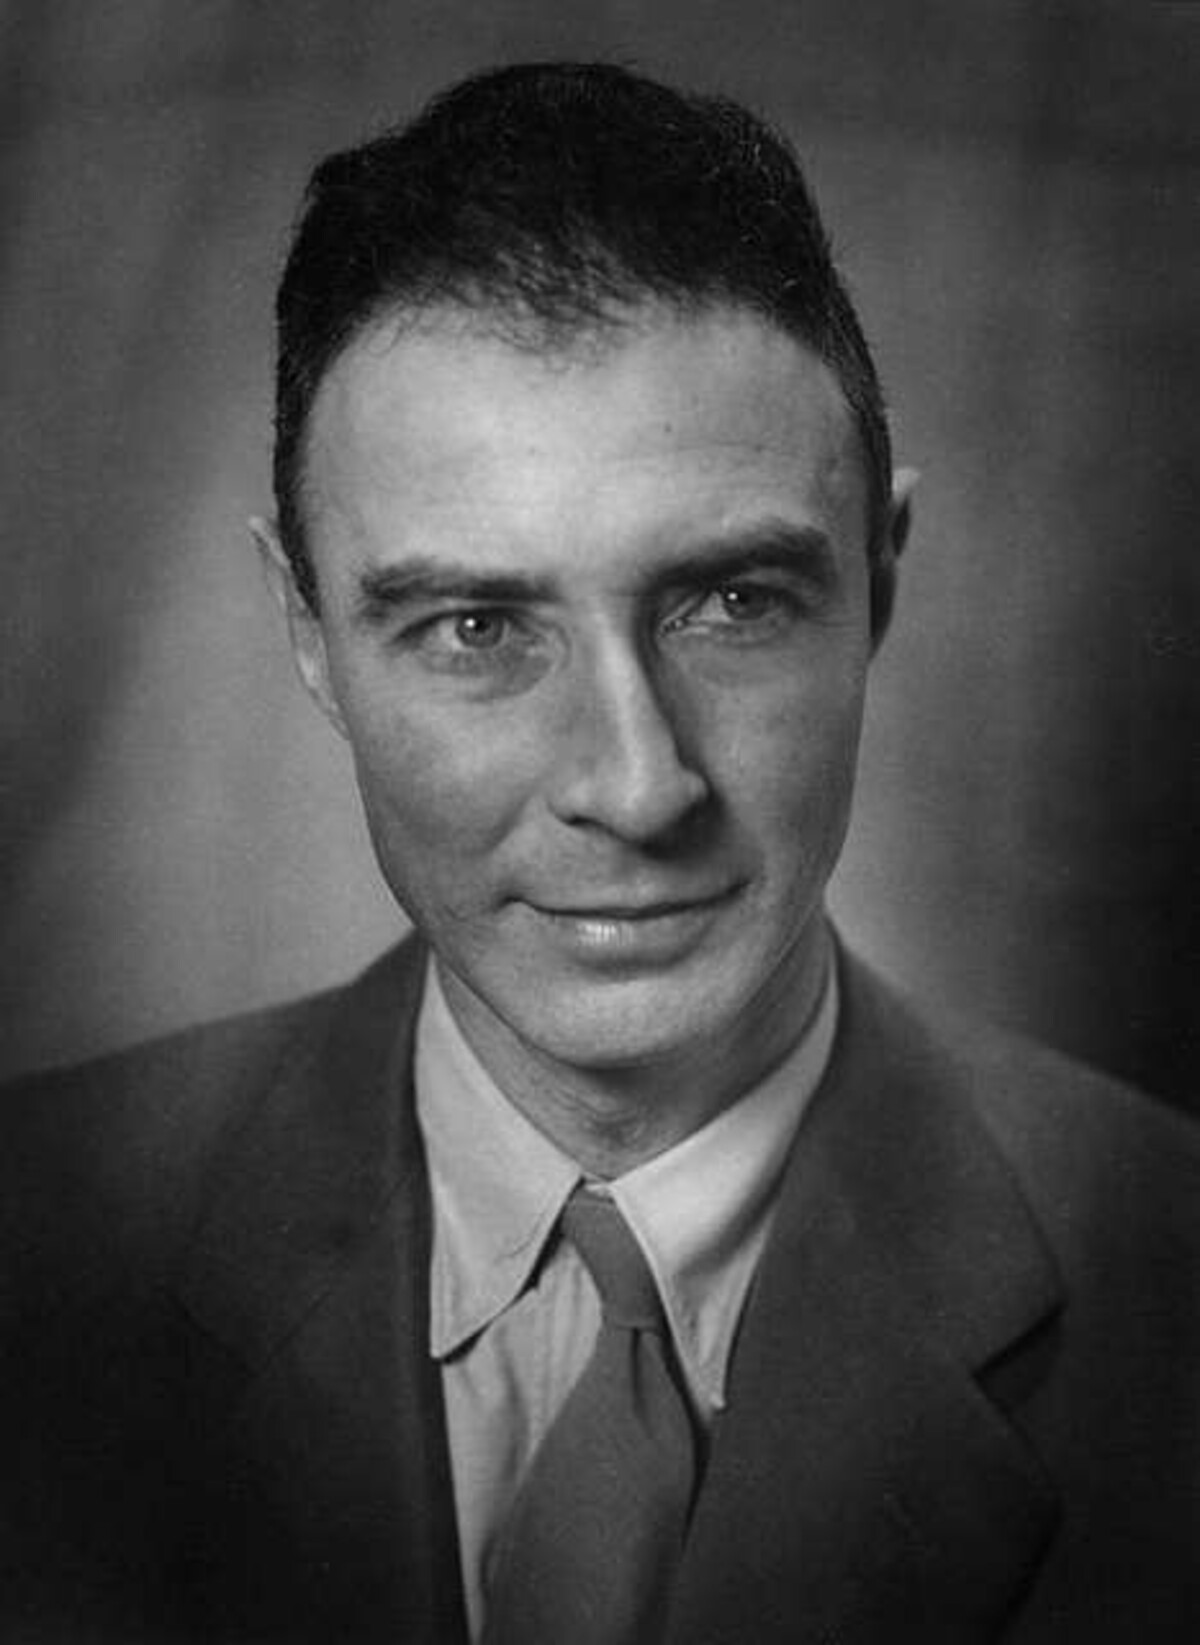 Oppenheimer.